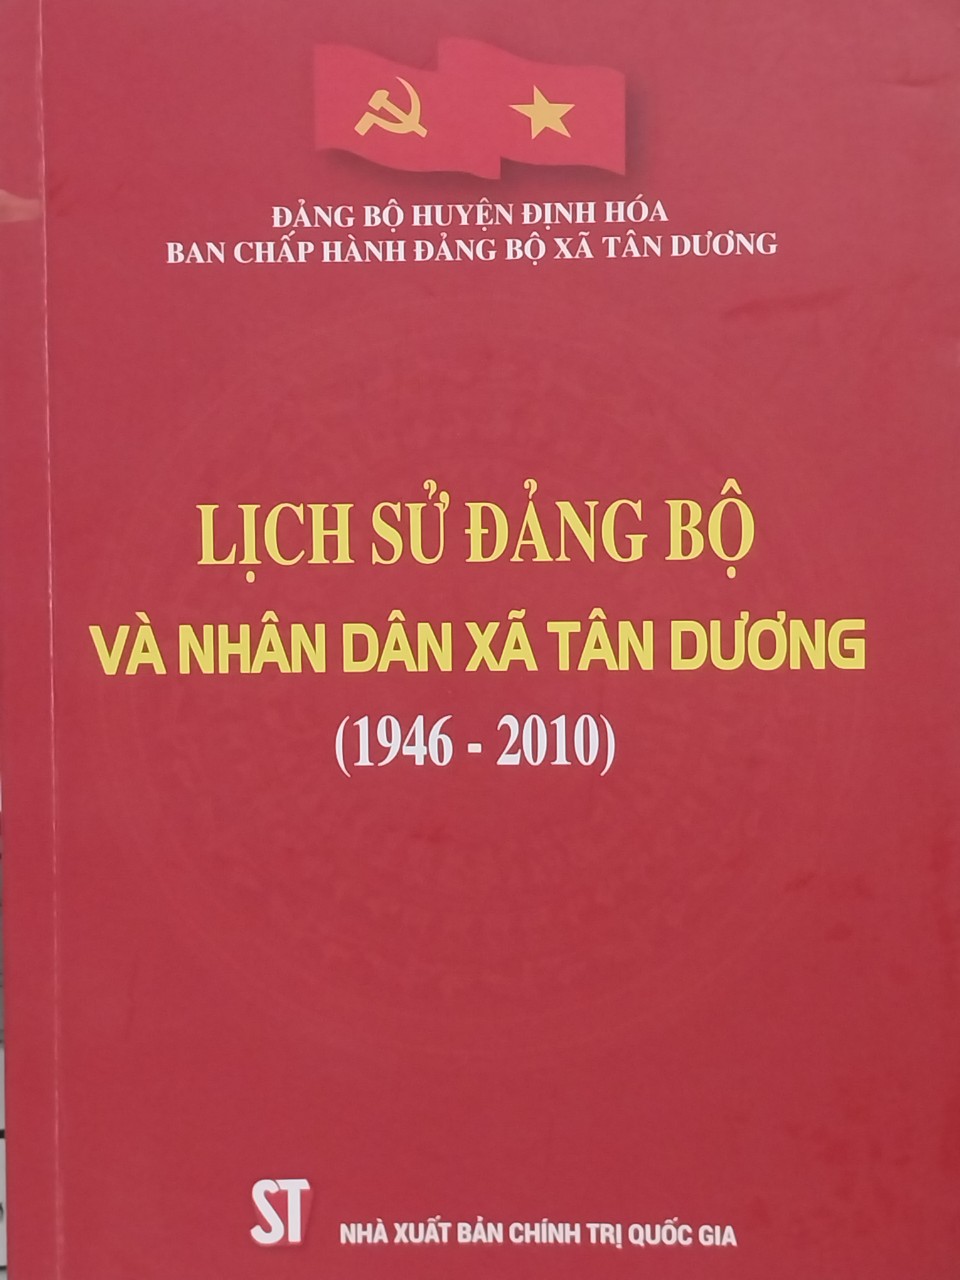 Lịch sử Đảng bộ xã Tân Dương (1946 - 2010)